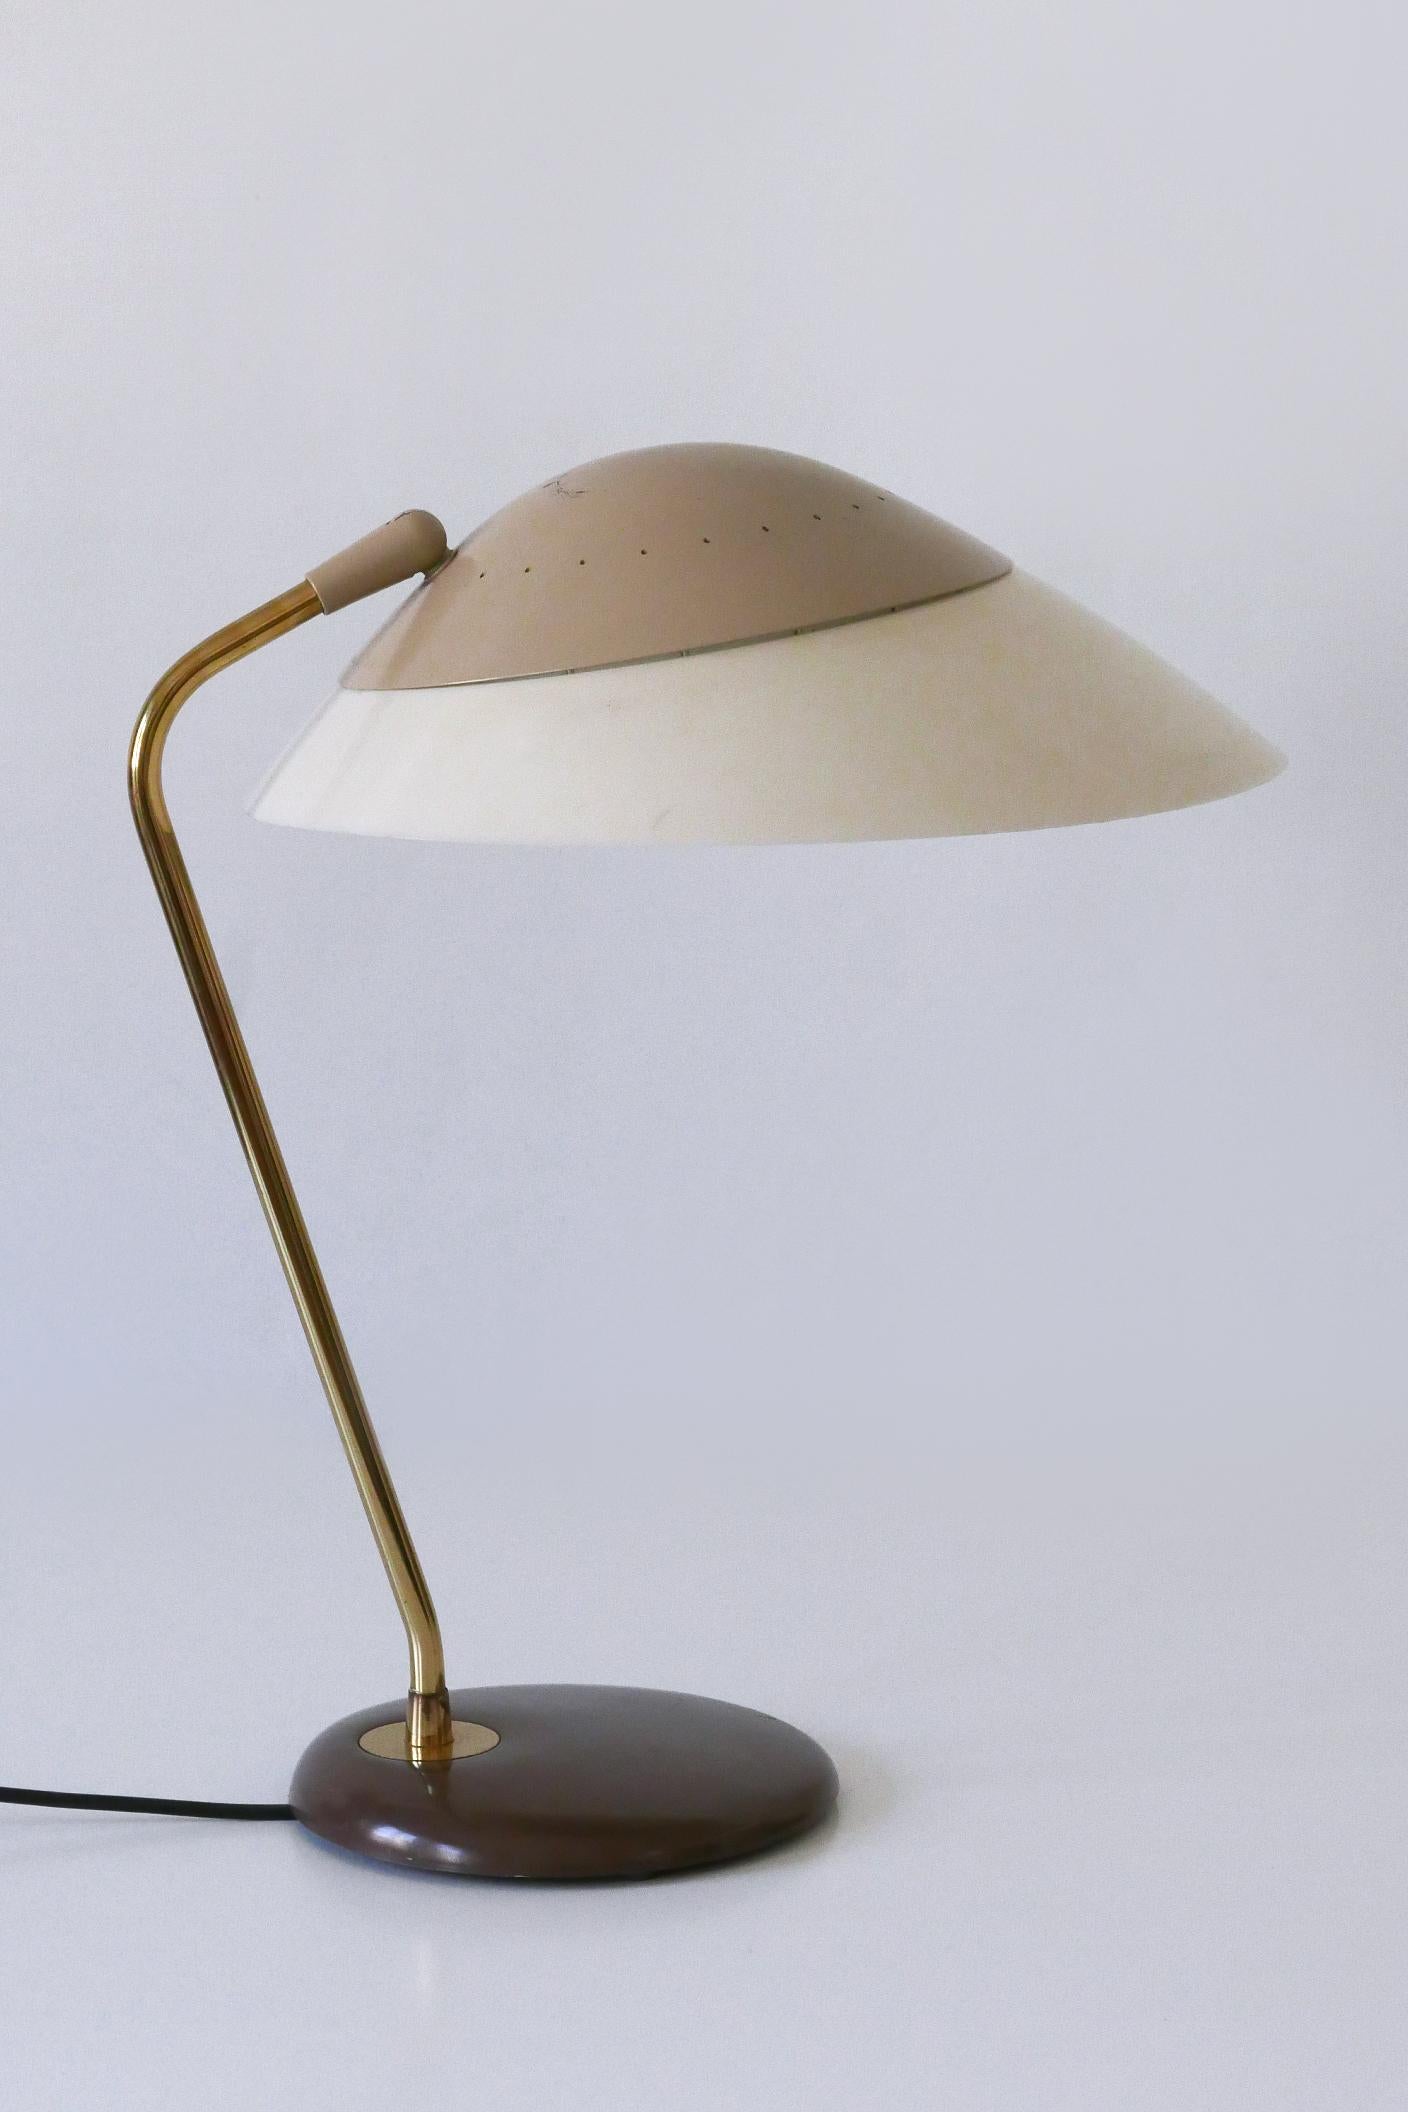 Elegant Table Lamp or Desk Light by Gerald Thurston for Lightolier USA 1950s For Sale 3